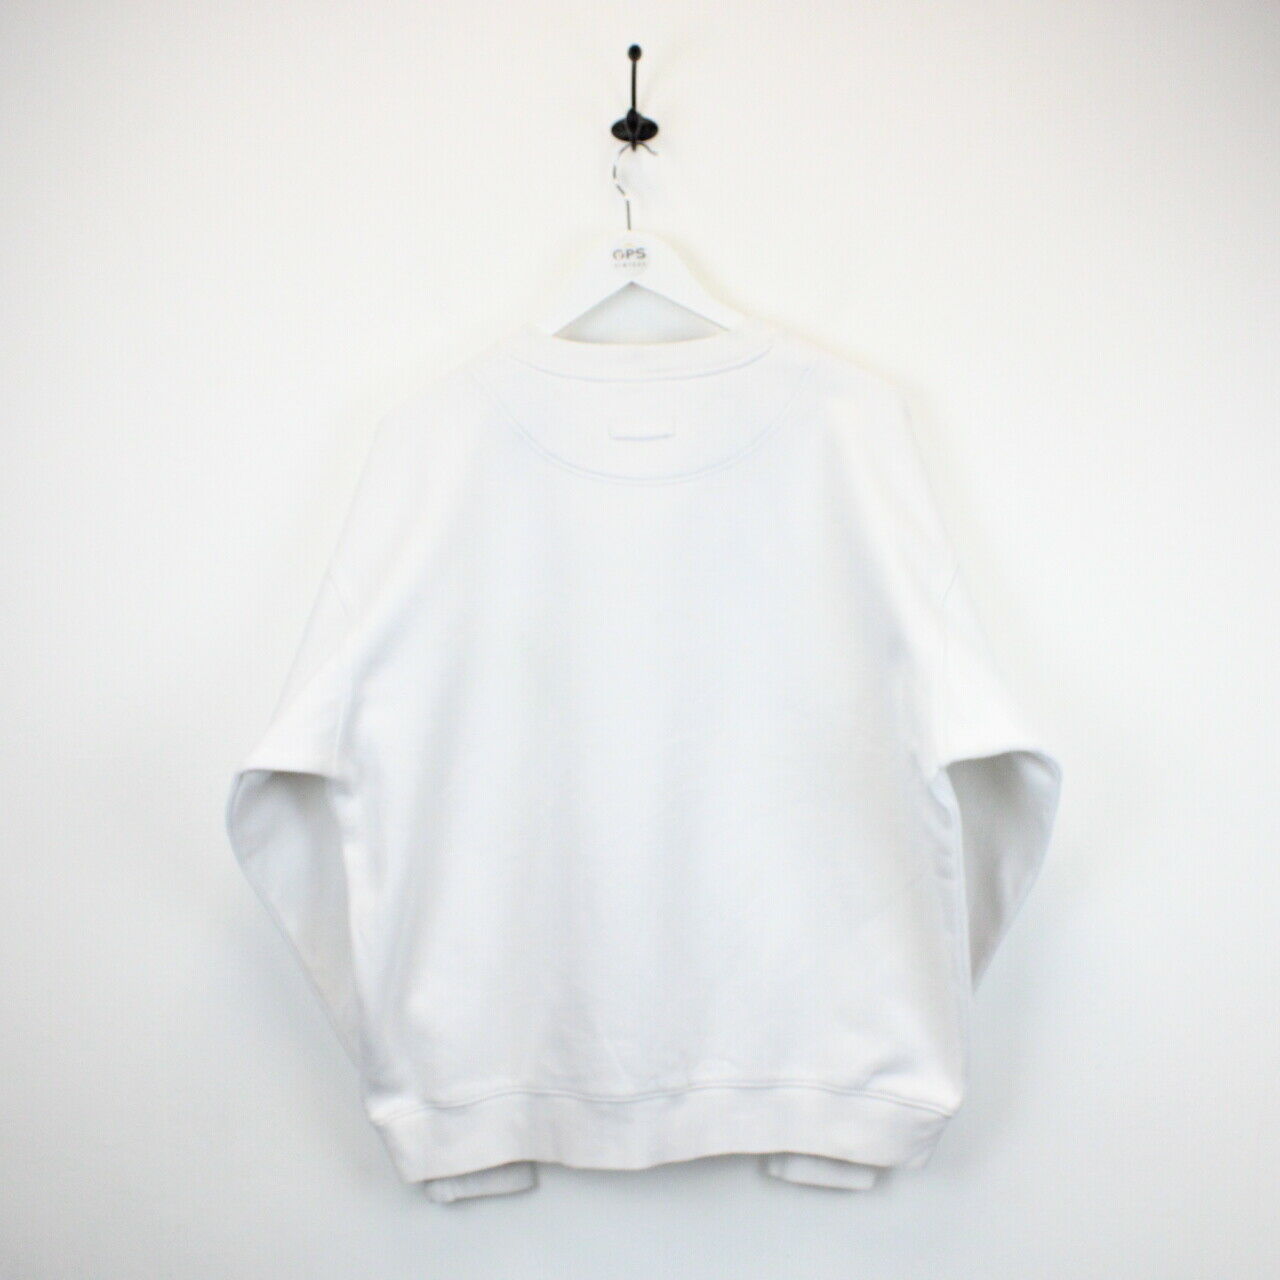 COLUMBIA 00s Sweatshirt White | XL